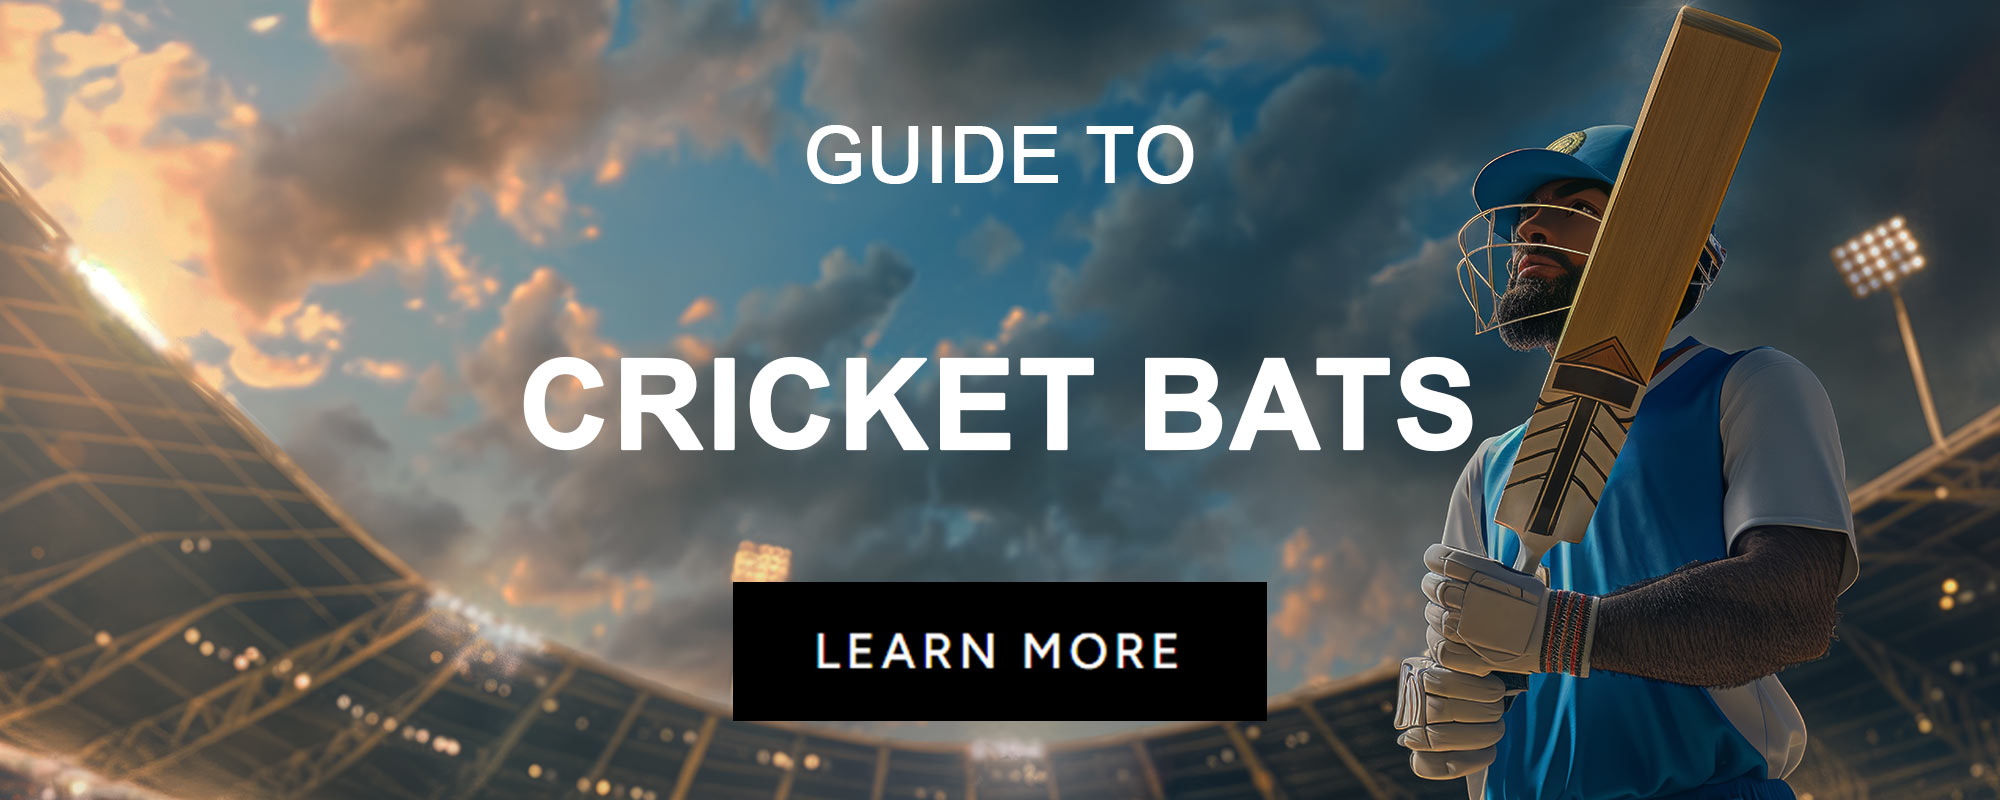 GUIDES_SPORT_CricketBats-V2.jpg